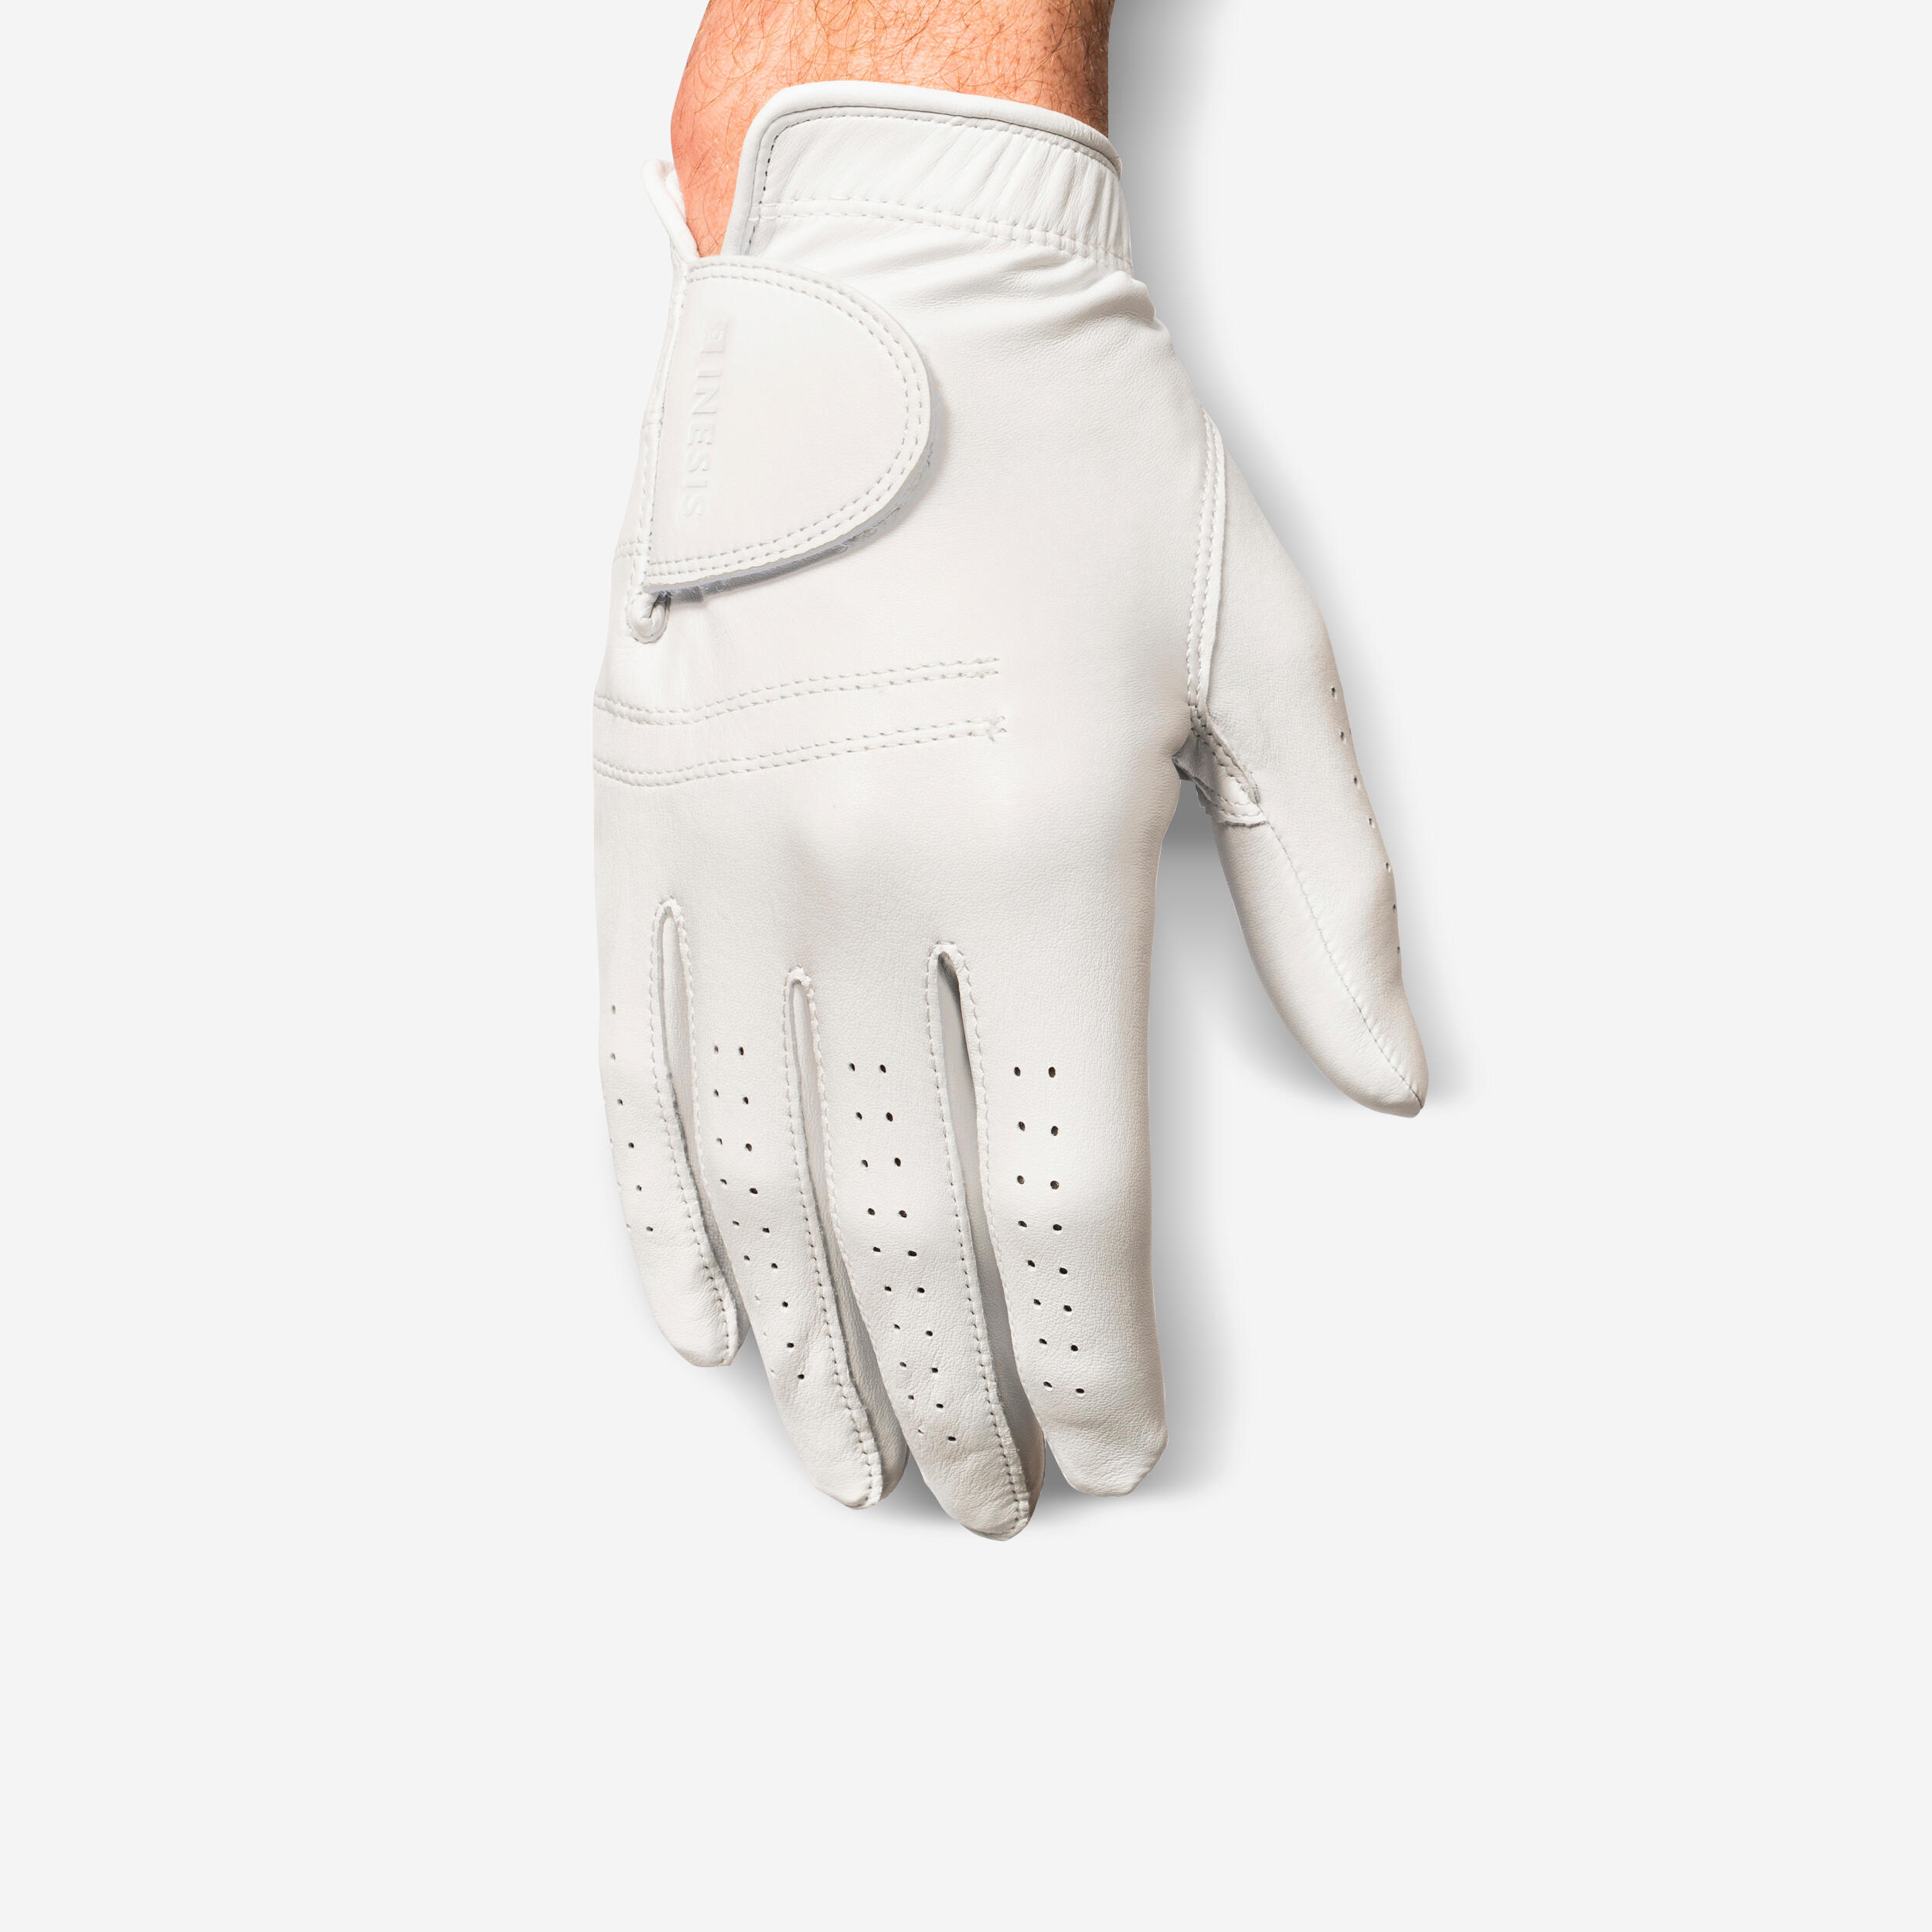 Men’s LH Cabretta Golf Glove - Tour 900 White - INESIS